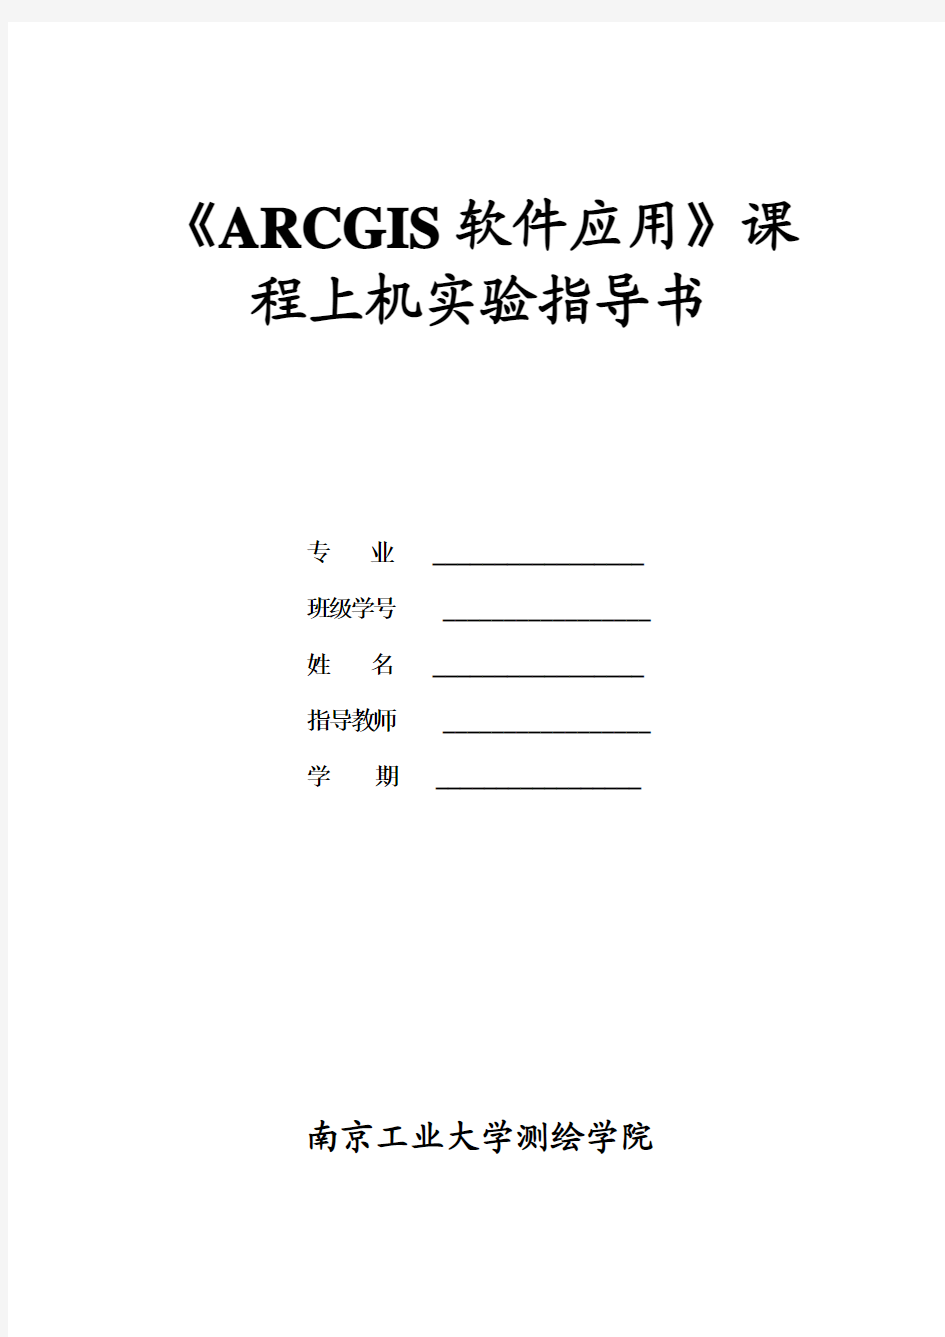 《ARCGIS软件应用》课程上机实验报告(7)